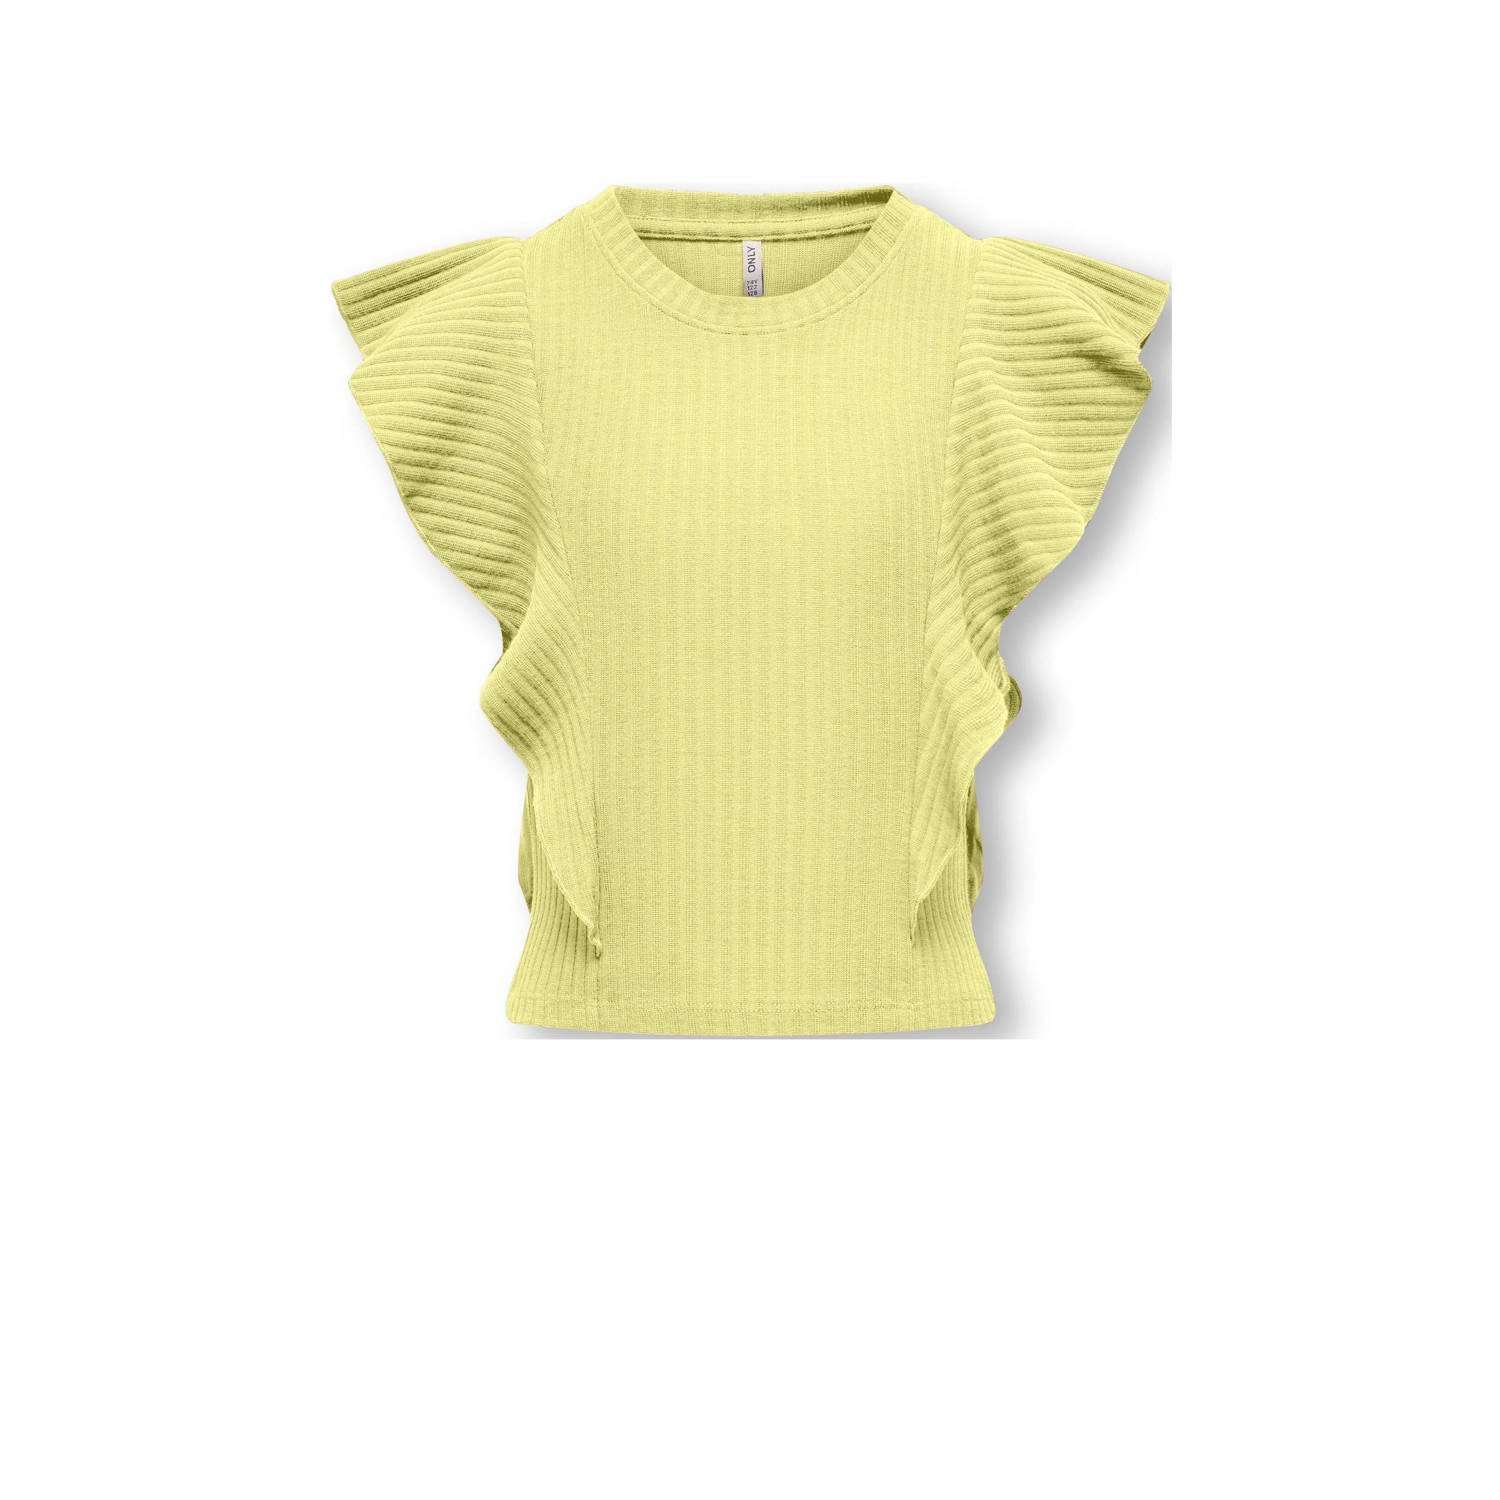 Only KIDS GIRL T-shirt KOGNELLA geel Top Meisjes Polyester Ronde hals Effen 110 116